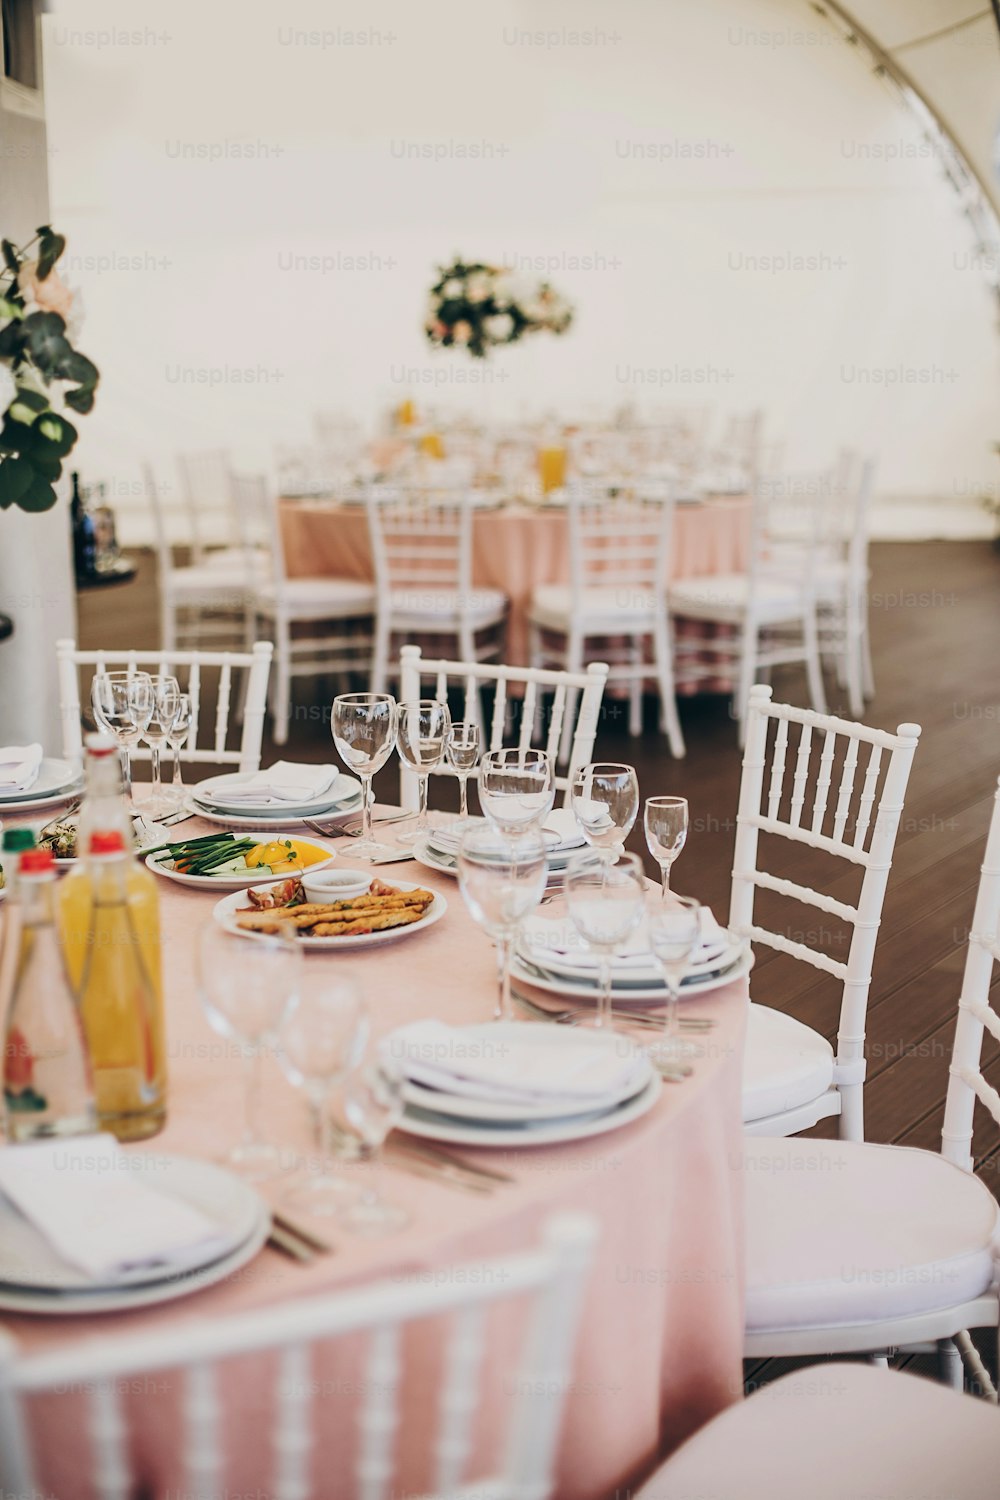 Elegante centro de mesa rosa con cubiertos plateados, copas de vino, platos vacíos, deliciosa comida servida en tela rosa en la recepción de la boda en el restaurante. Catering de lujo